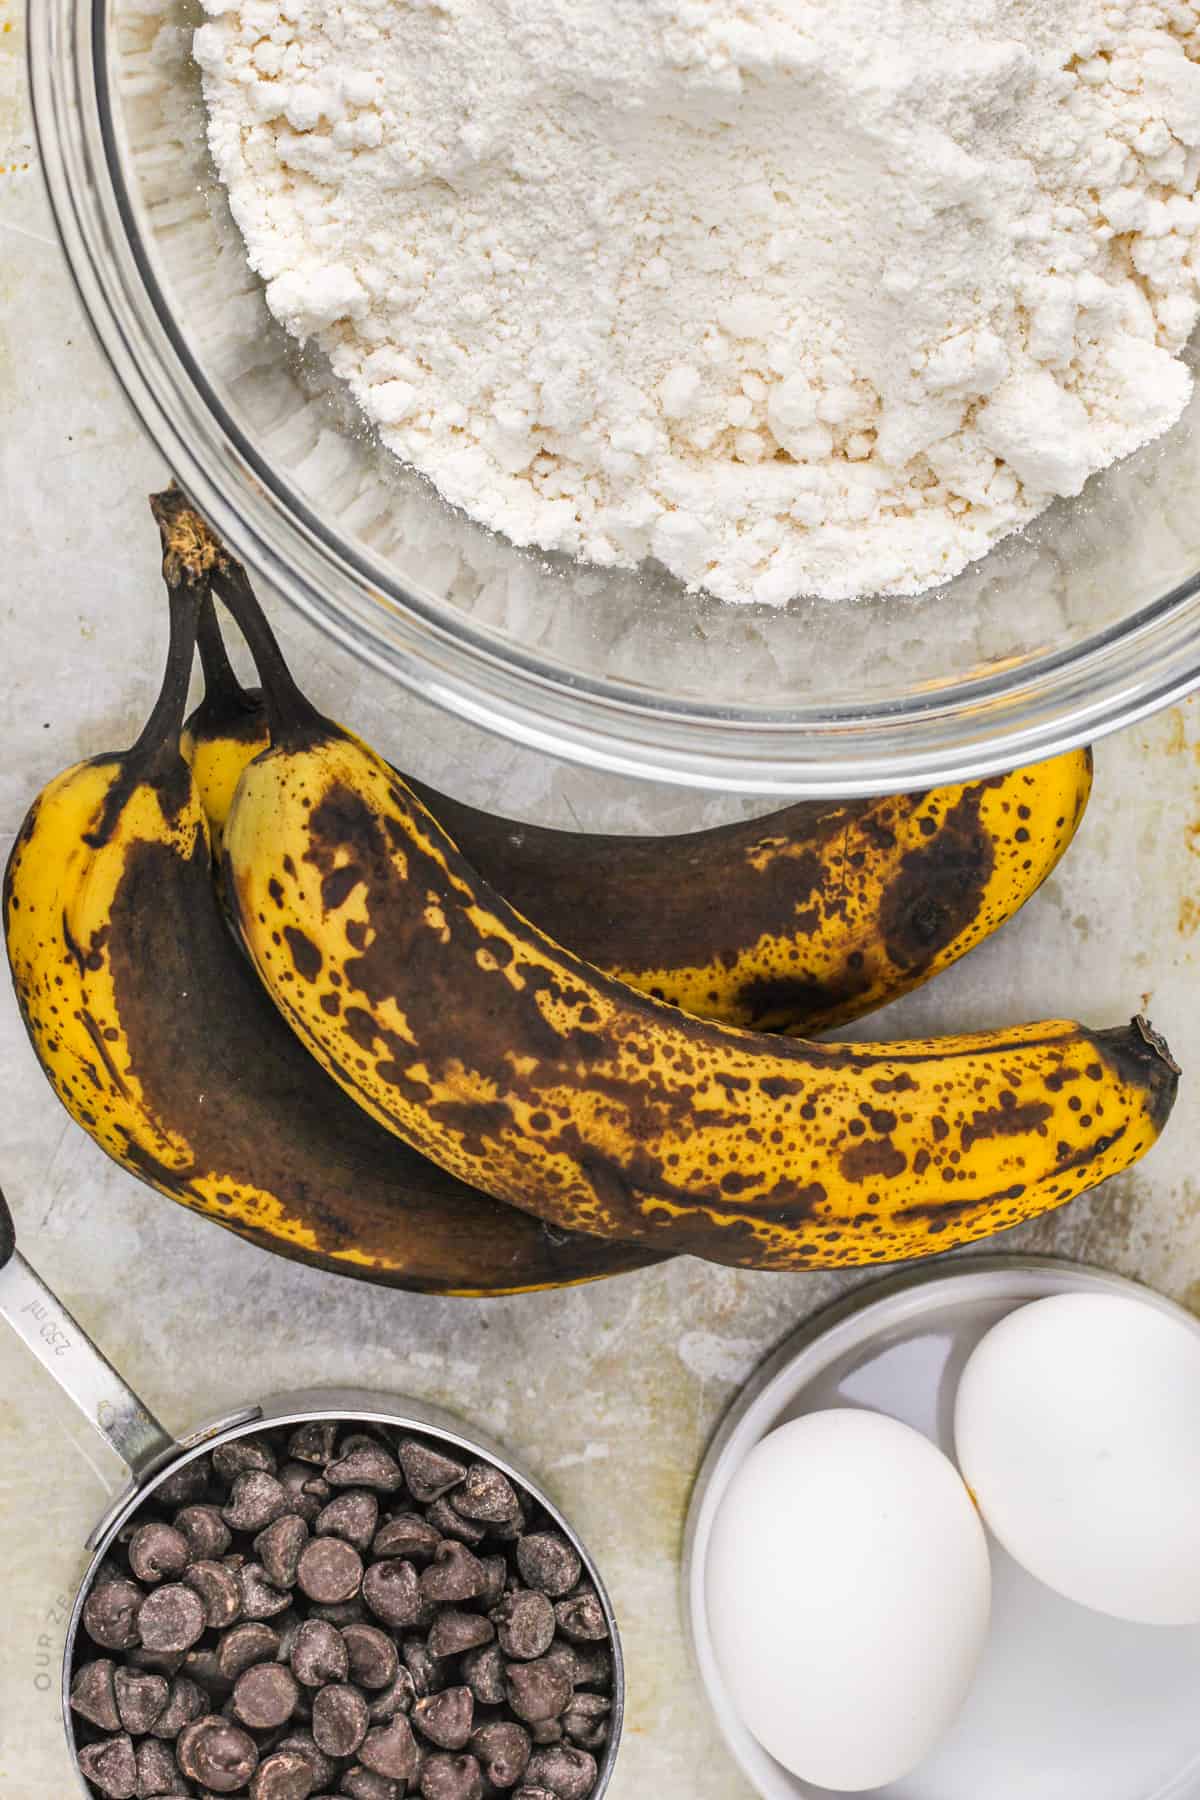 ingredients to make Cake Mix Banana Bread